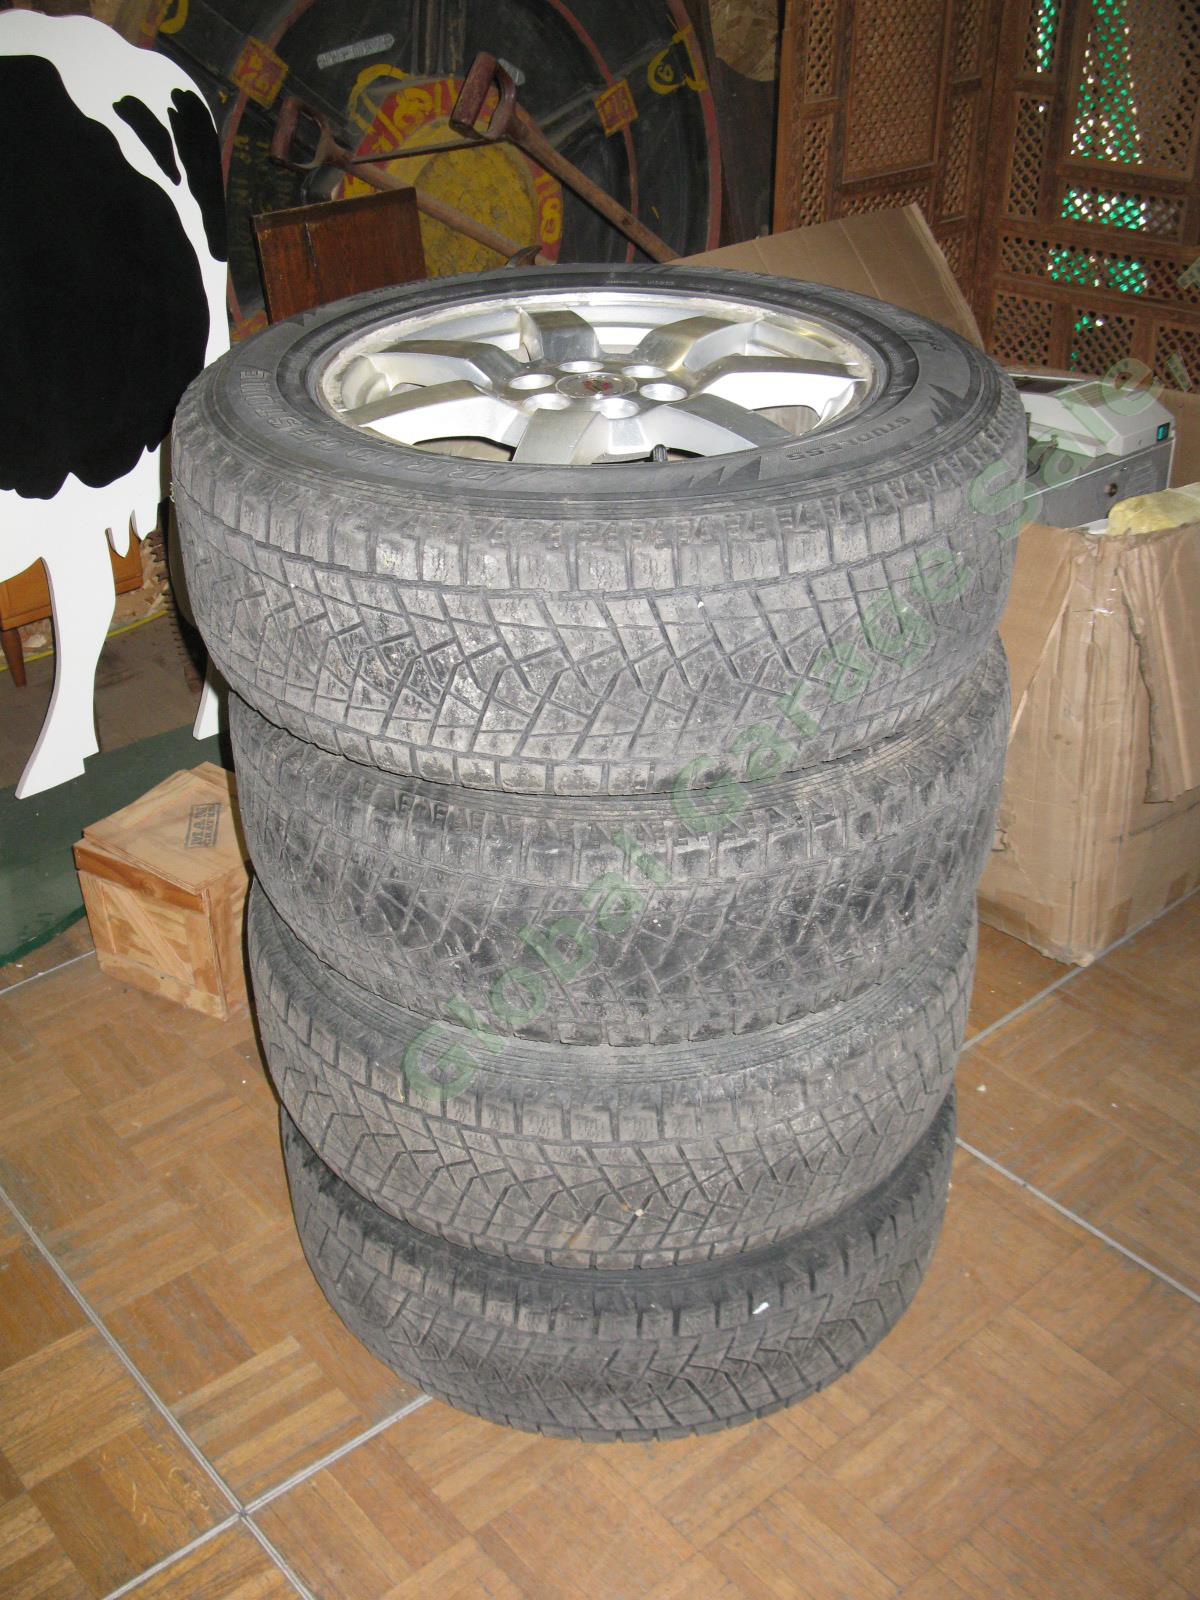 4 17"x 7.5" Rims Wheels + Bridgestone Blizzak 235/65/R17 Snow Tires Cadillac SRX 1